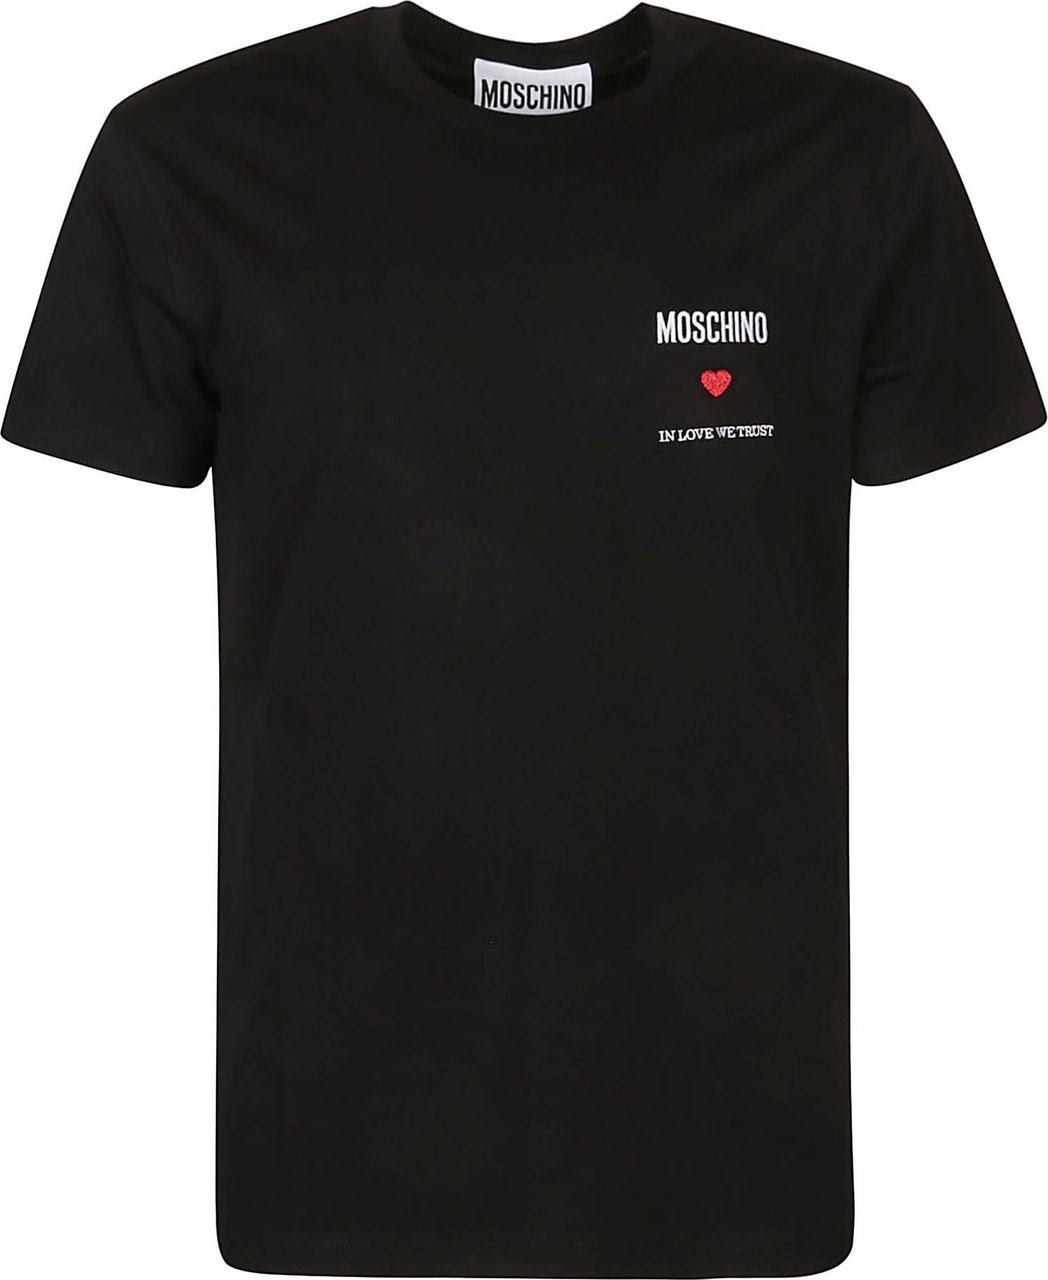 Moschino T-shirt Black Zwart